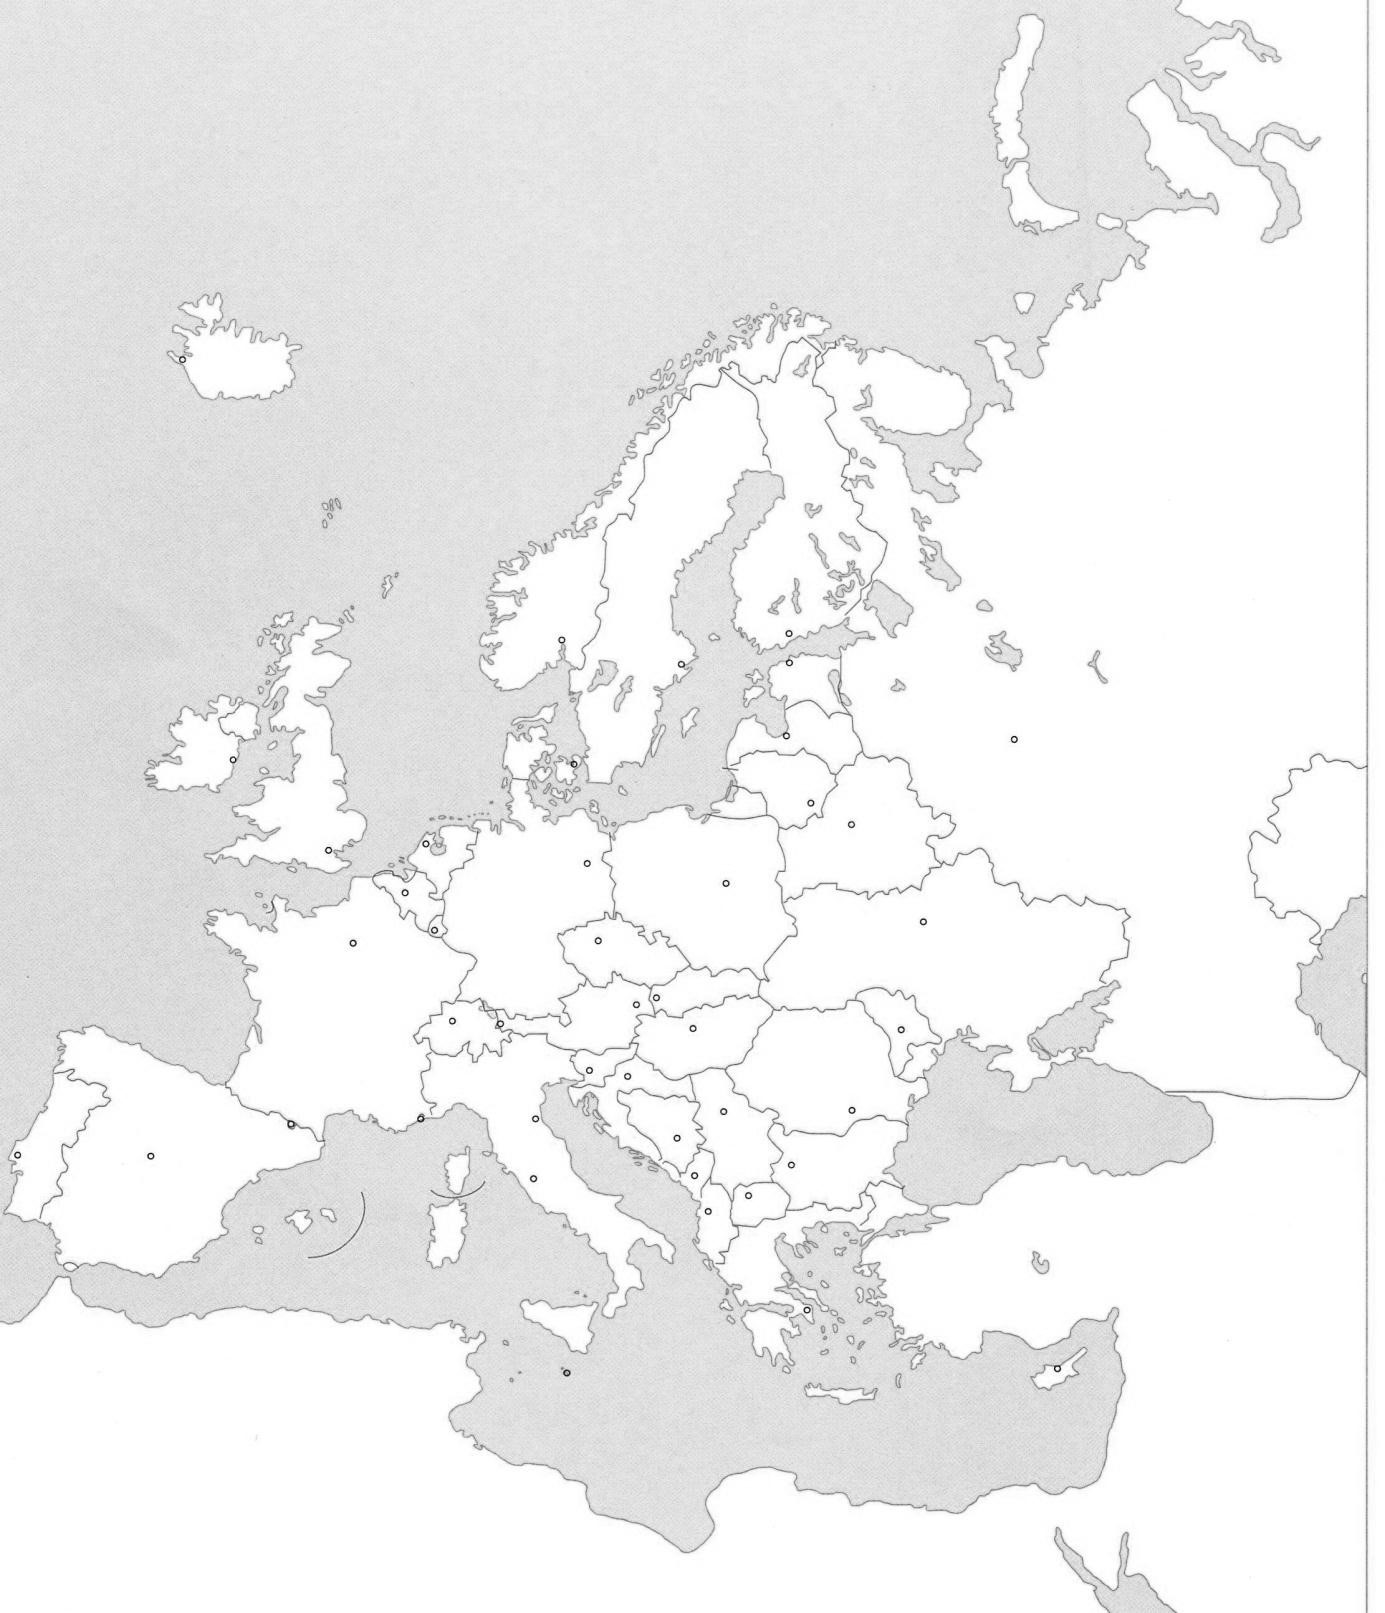 prazna karta europe Osnovna škola 